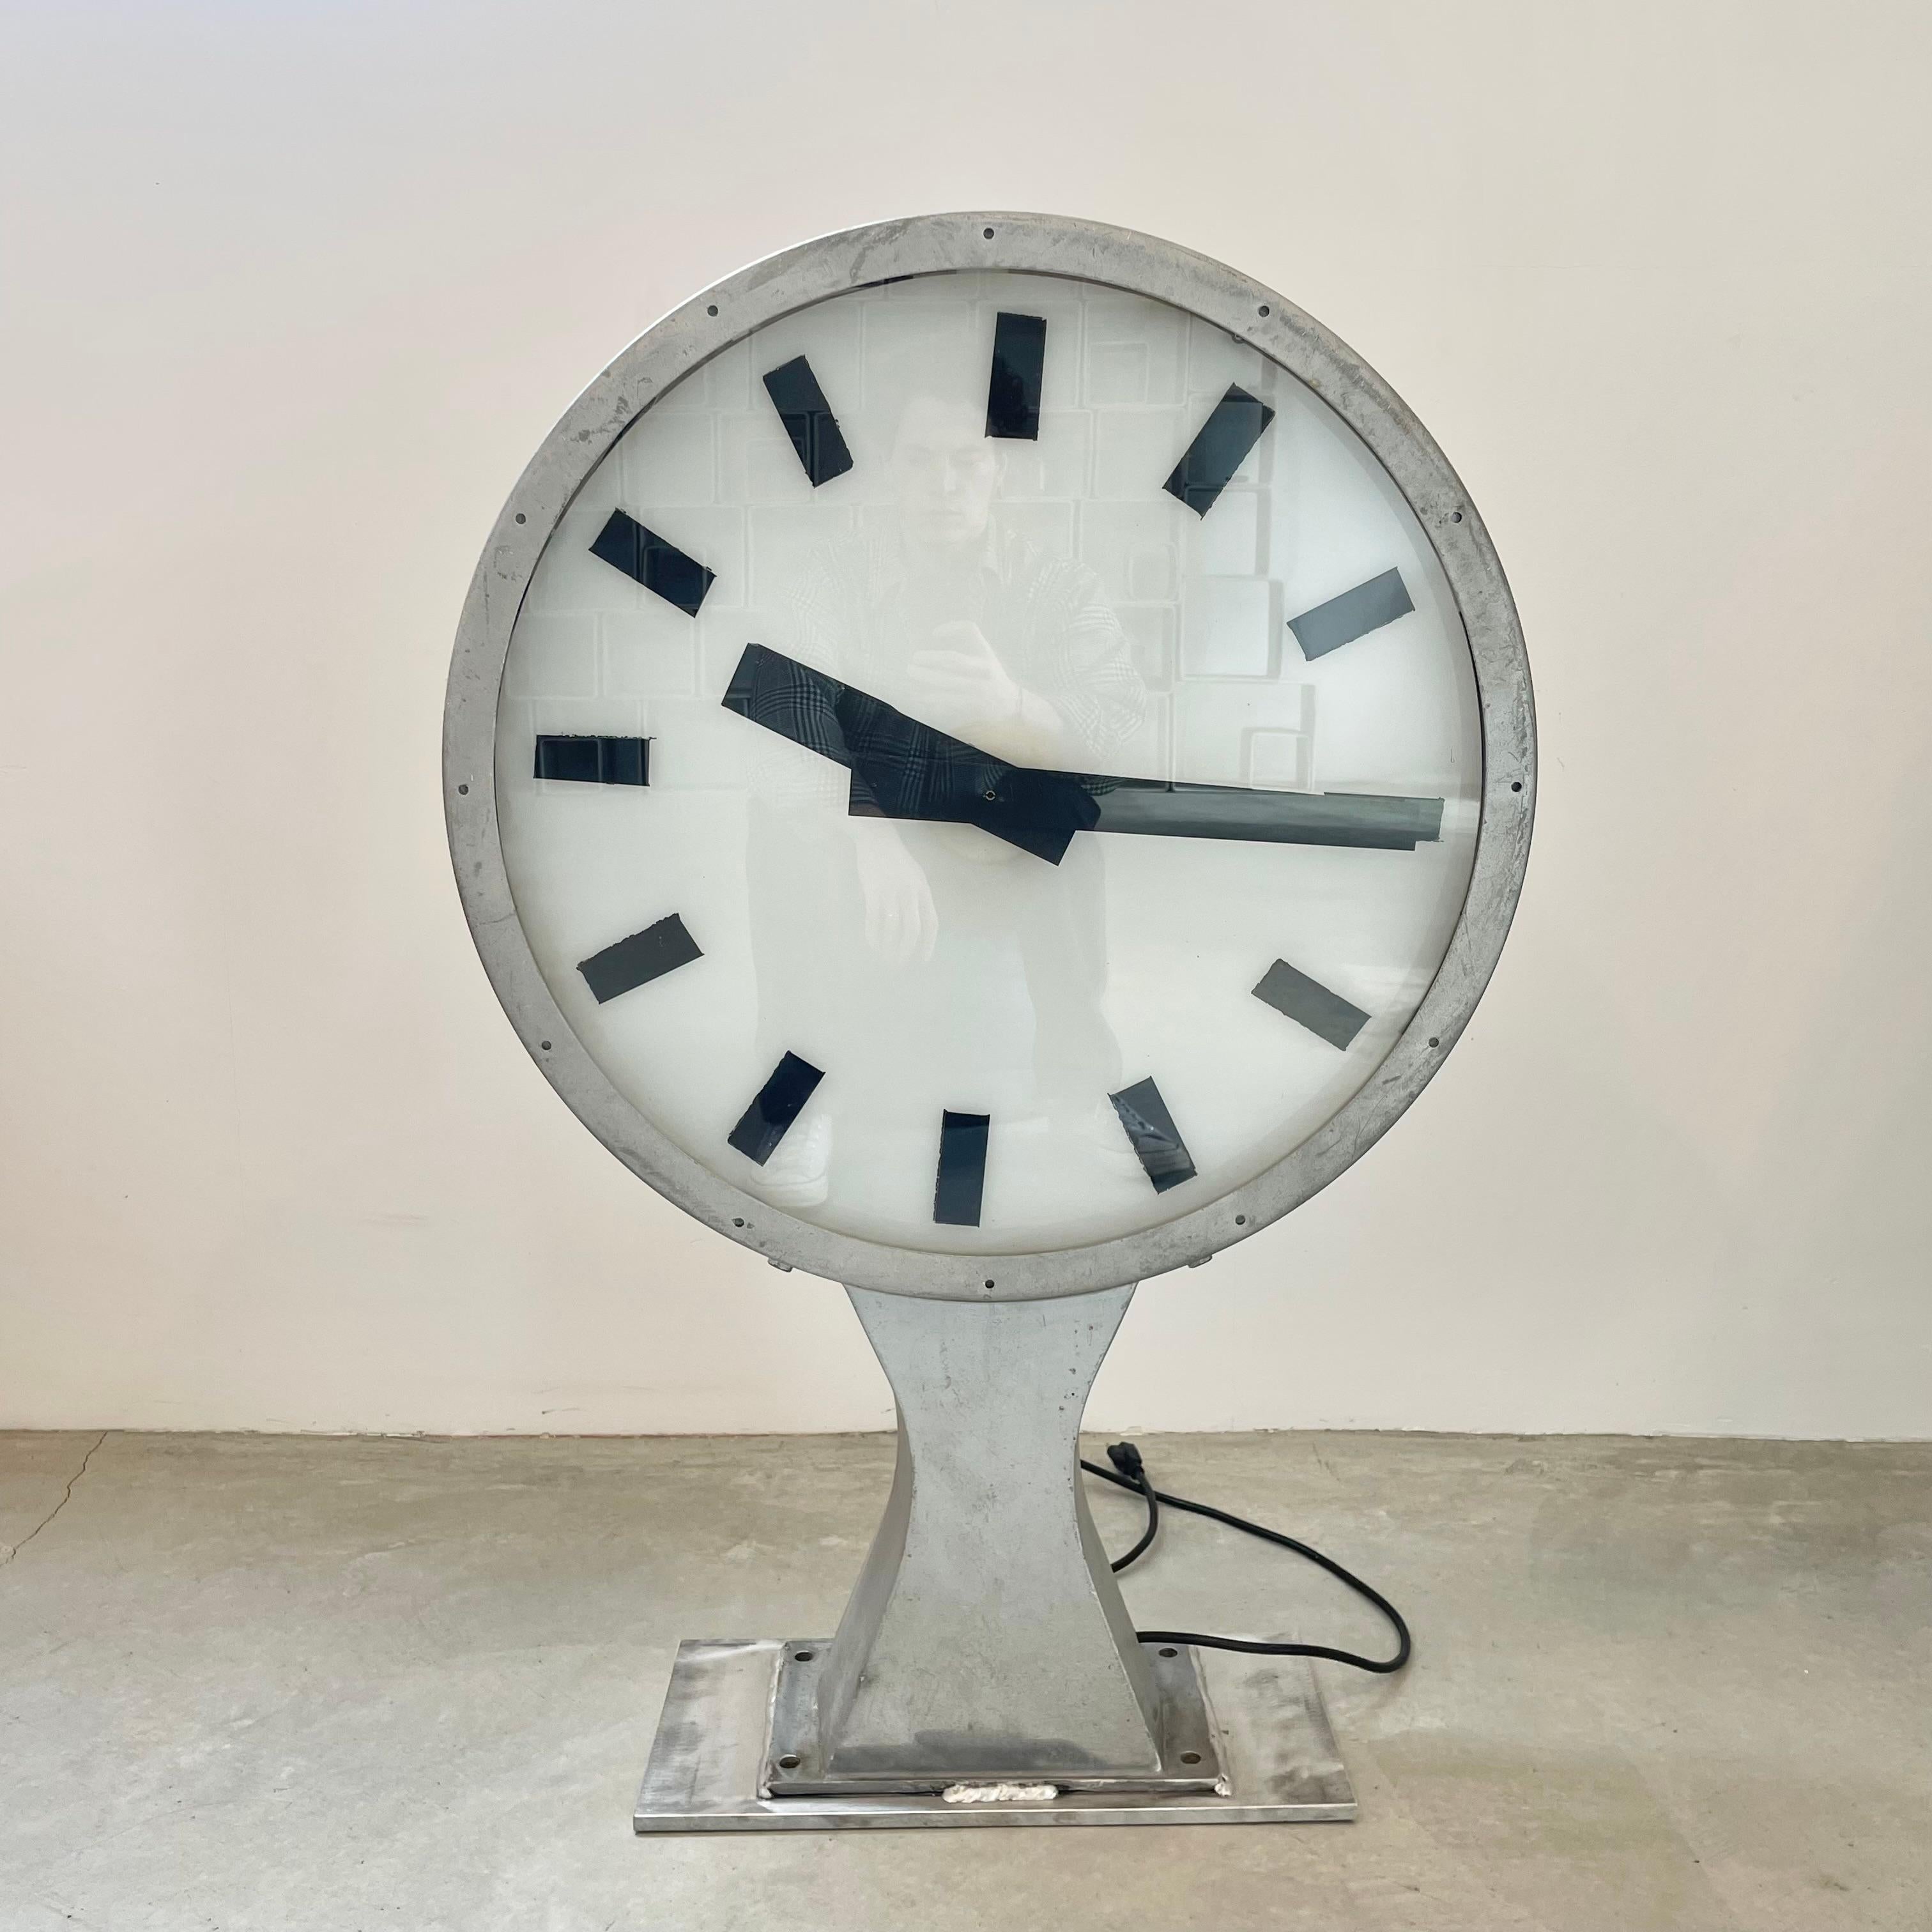 Fantastique horloge de gare éclairée des deux côtés, originaire du Danemark, vers les années 1960. Chaque côté peut être réglé sur une heure/un fuseau horaire différent. La quintessence du design minimaliste scandinave. Horloge en parfait état de